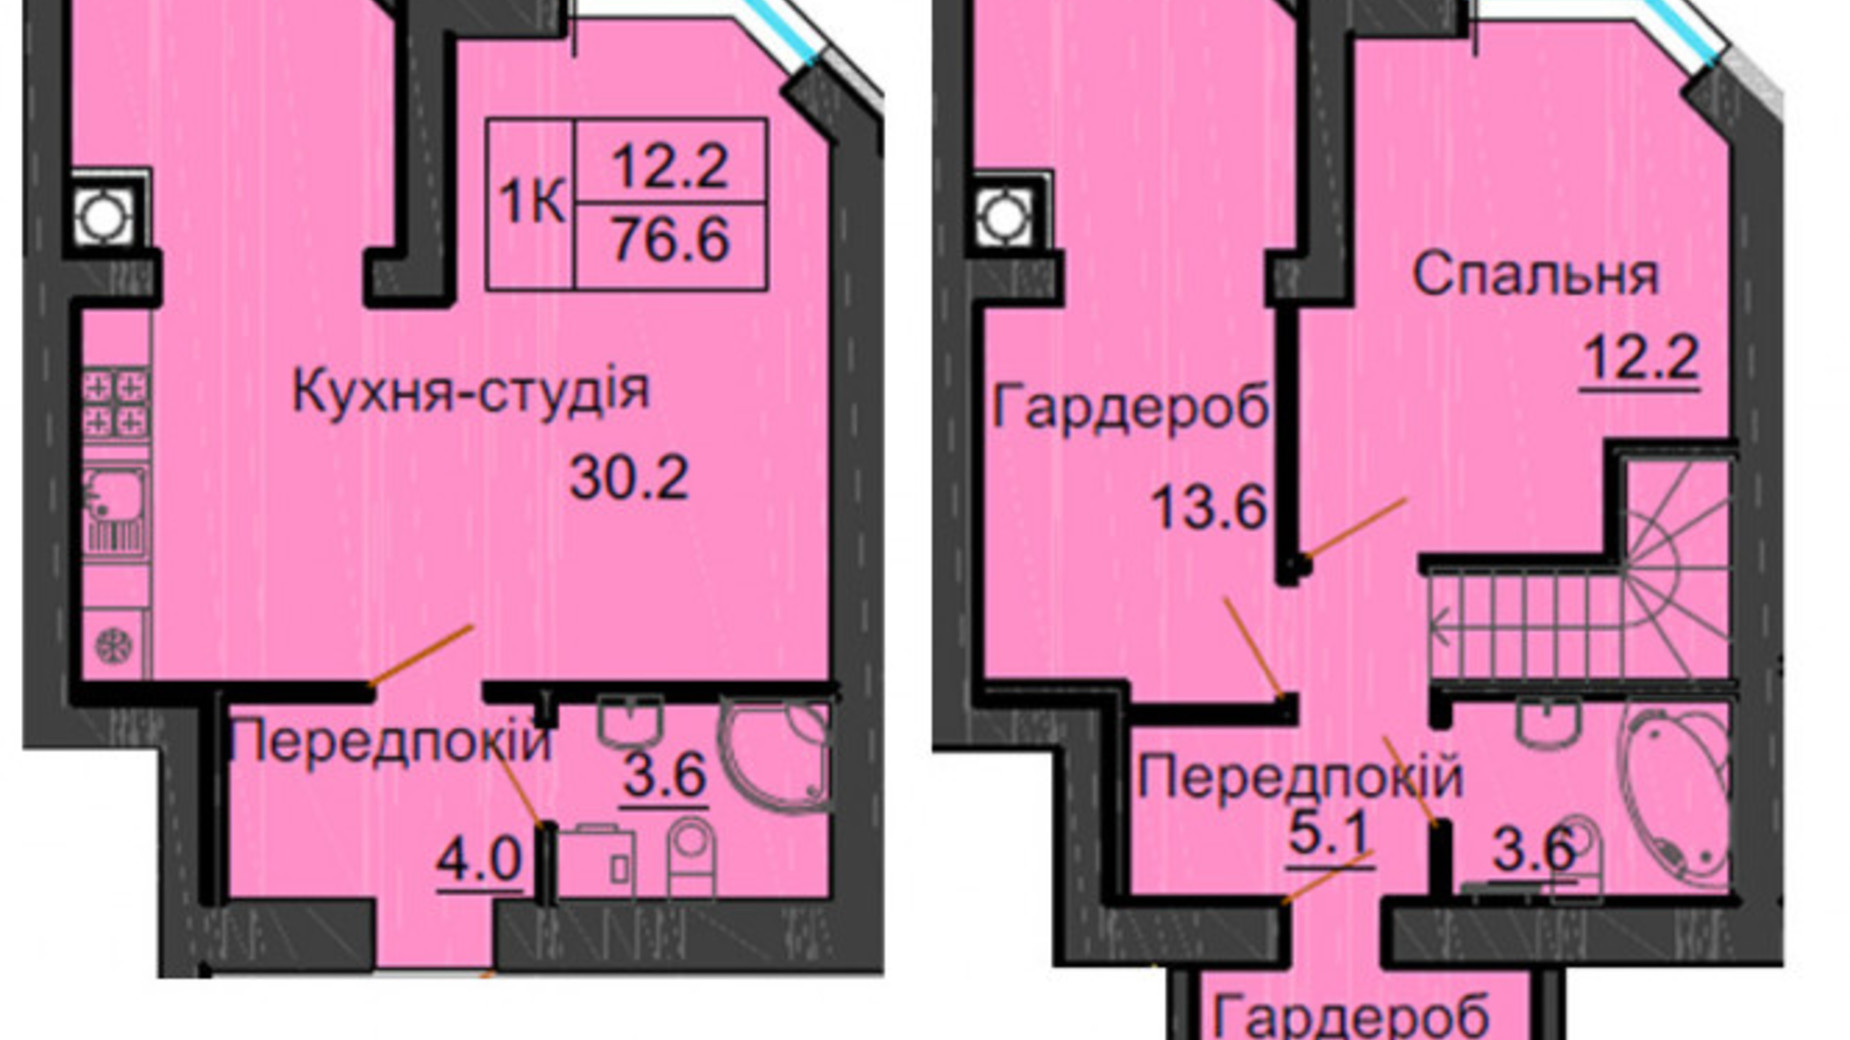 Планировка много­уровневой квартиры в ЖК София Резиденс 76.6 м², фото 540450